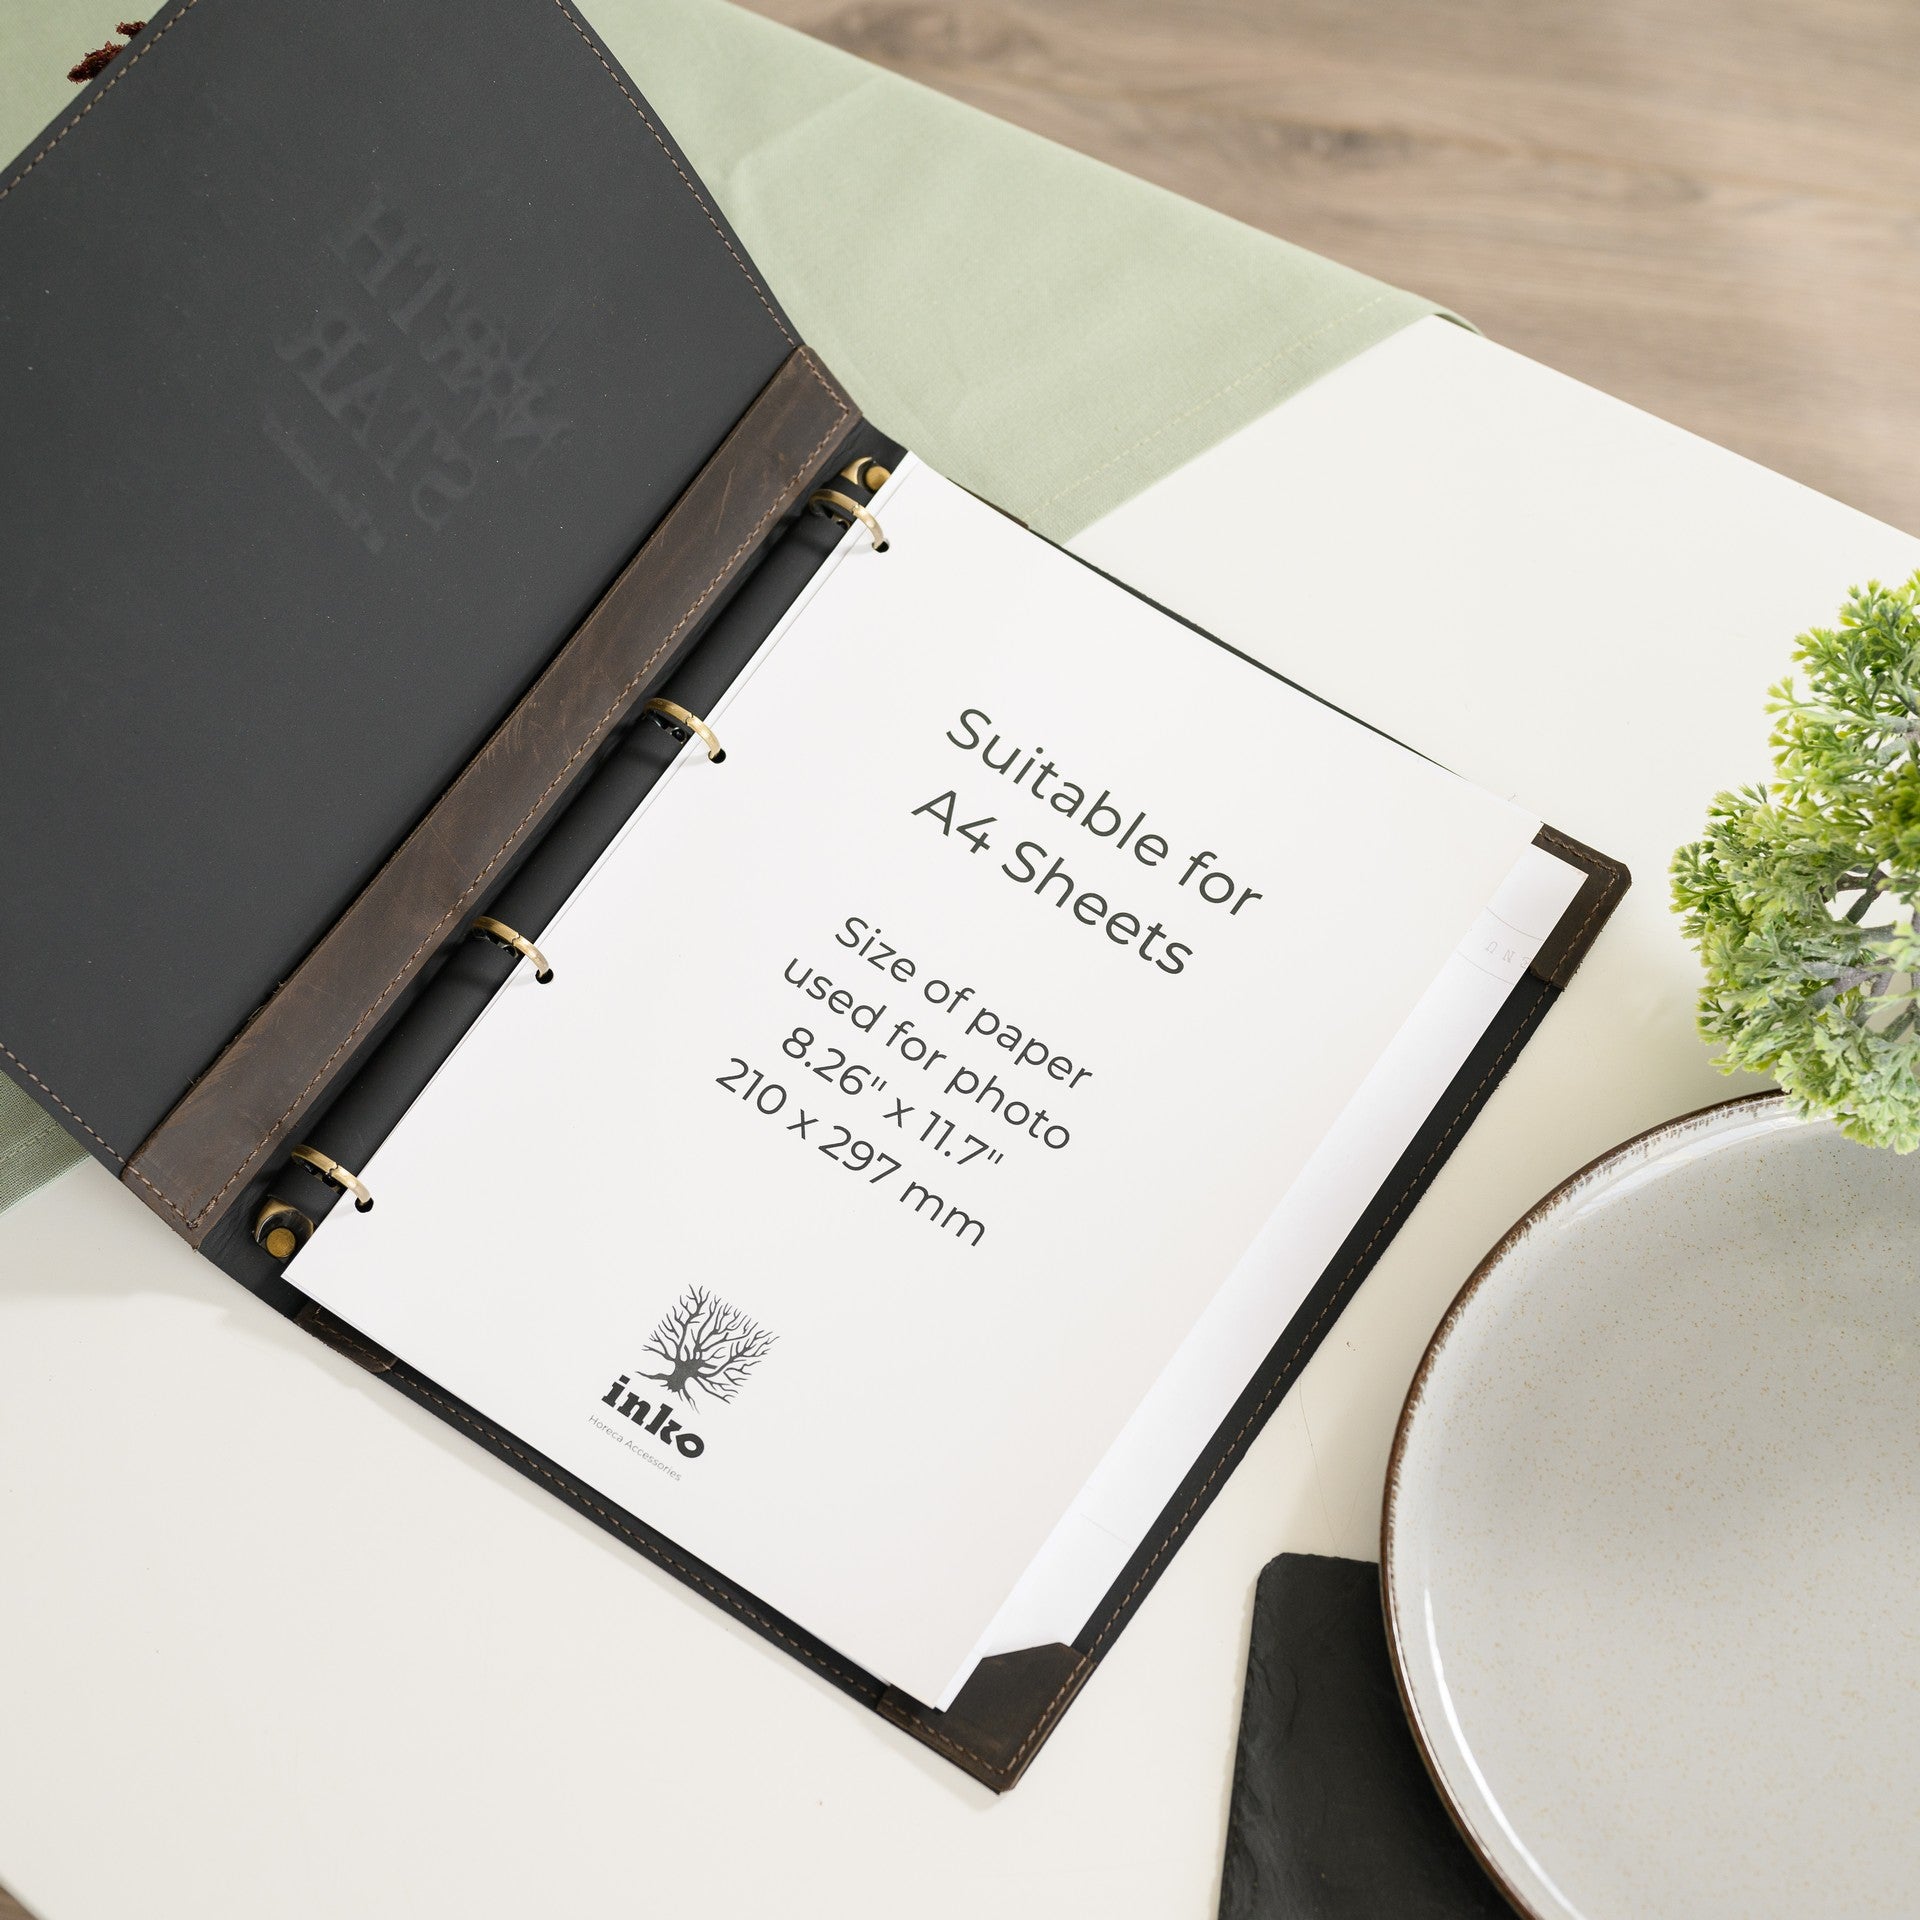 Make a statement with our elegant restaurant menu holder, designed for refined presentation.